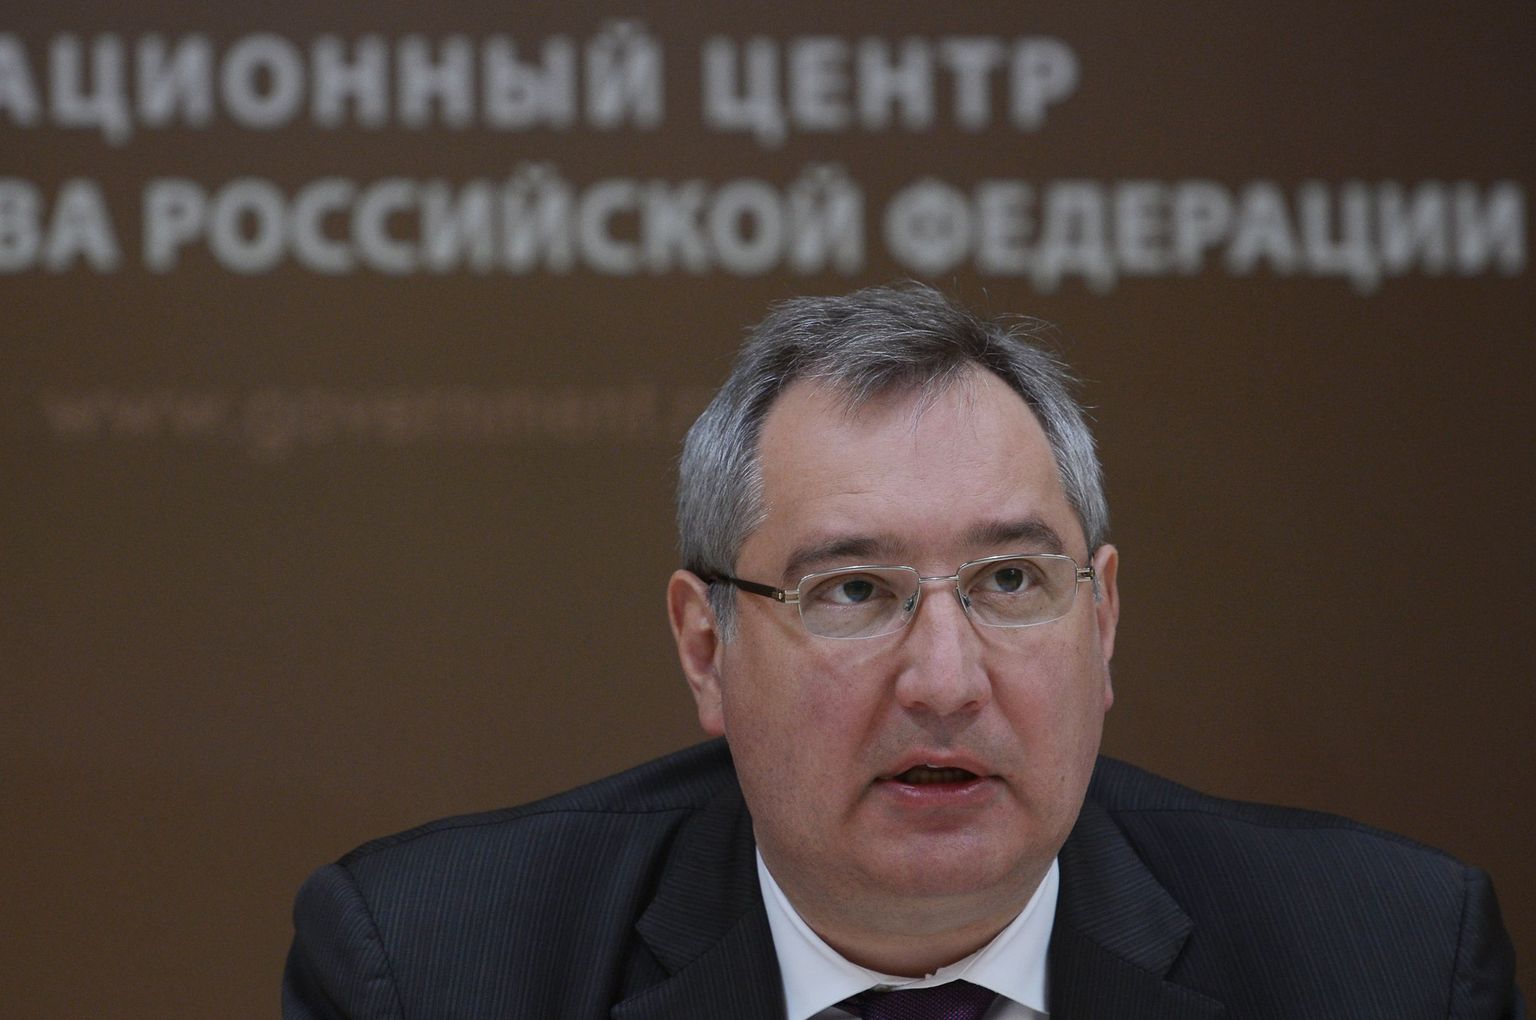 Venemaa asepeaminister Dmitri Rogozin.